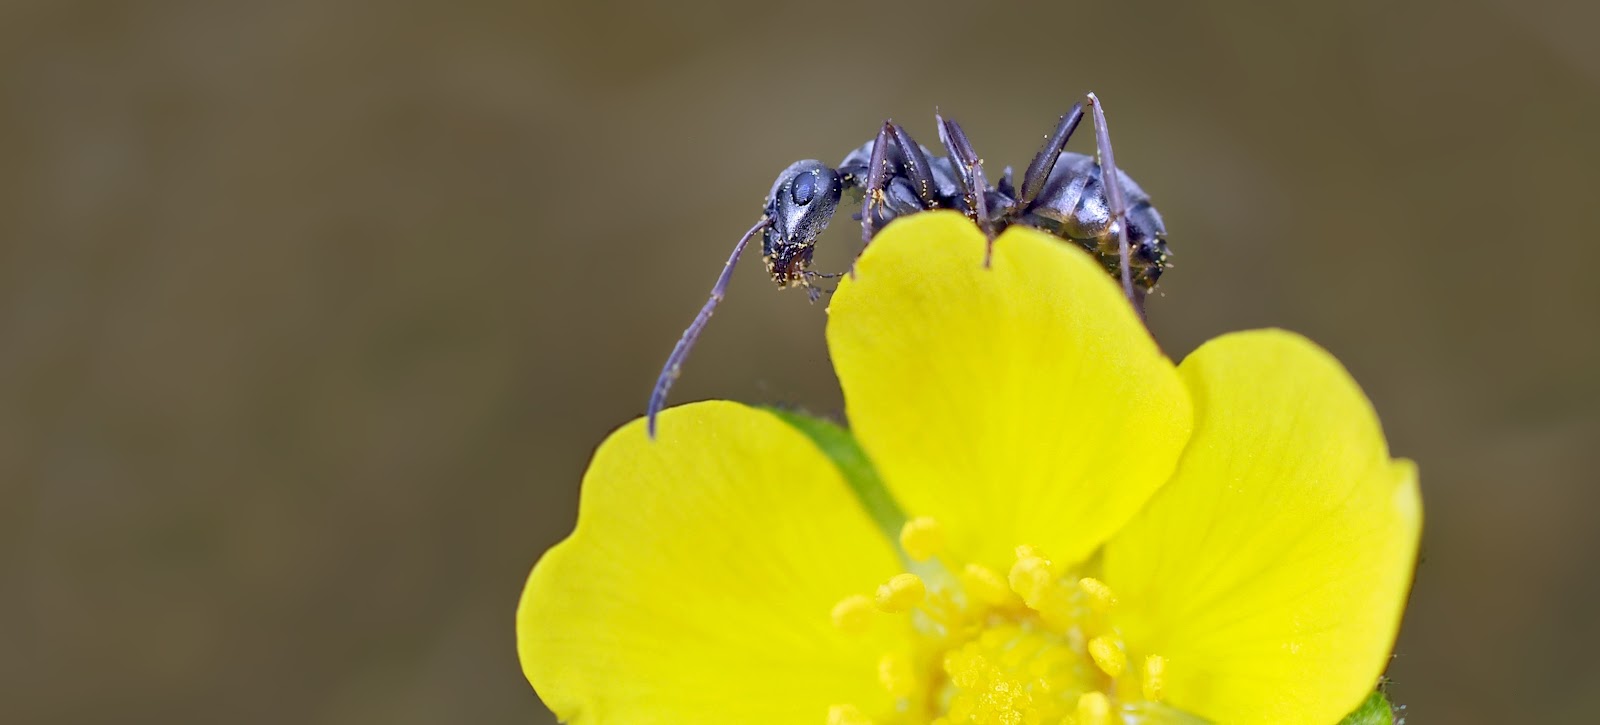 春の黄色い花弁の上の一匹の黒い蟻